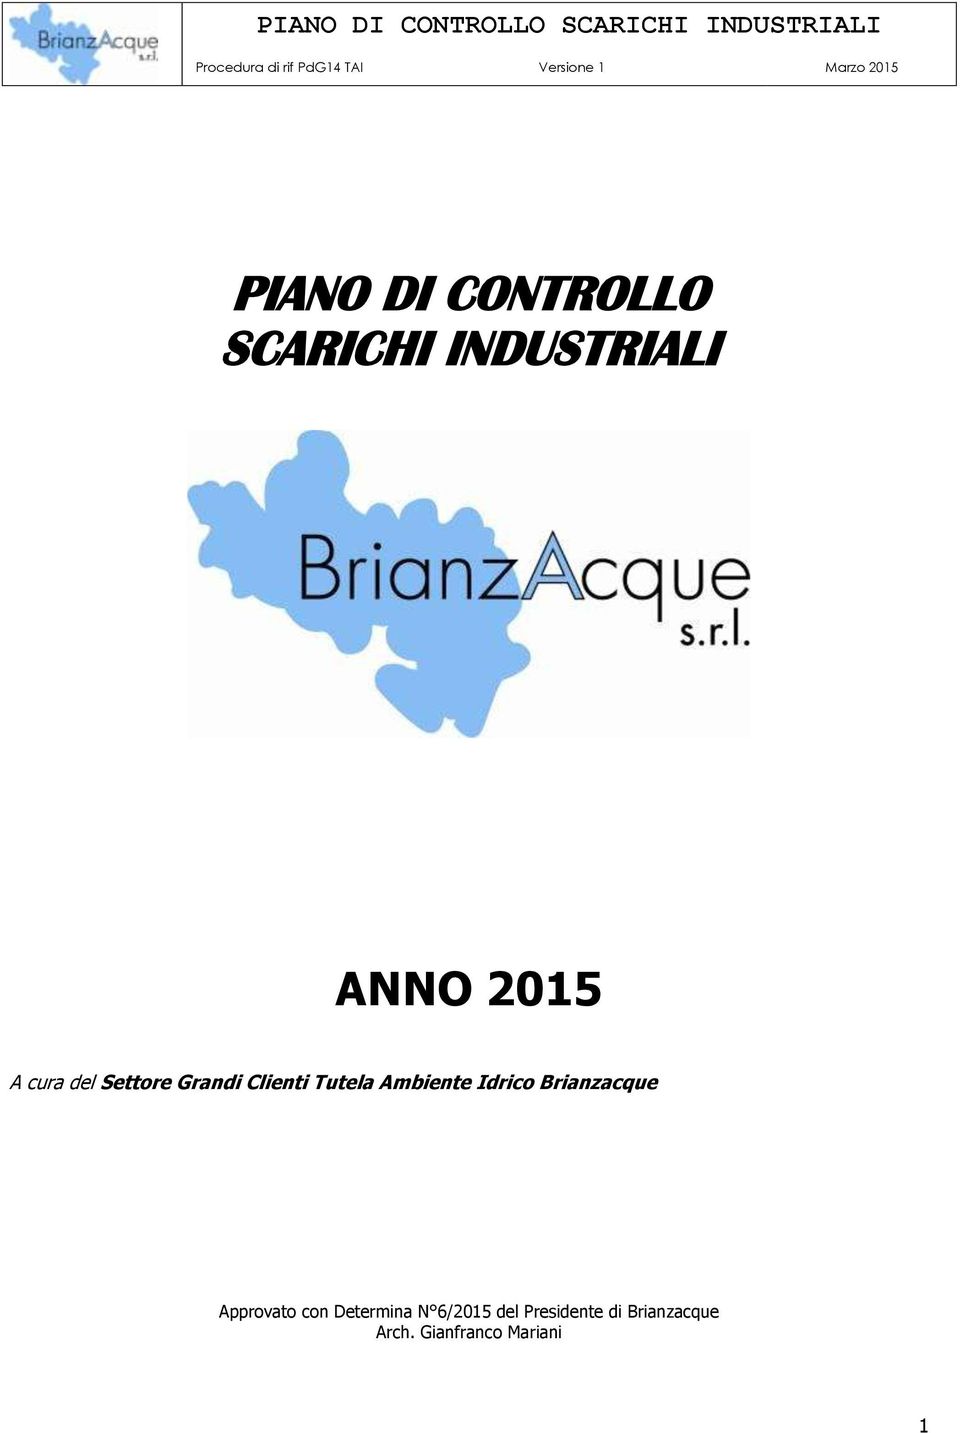 Idrico Brianzacque Approvato con Determina N 6/2015